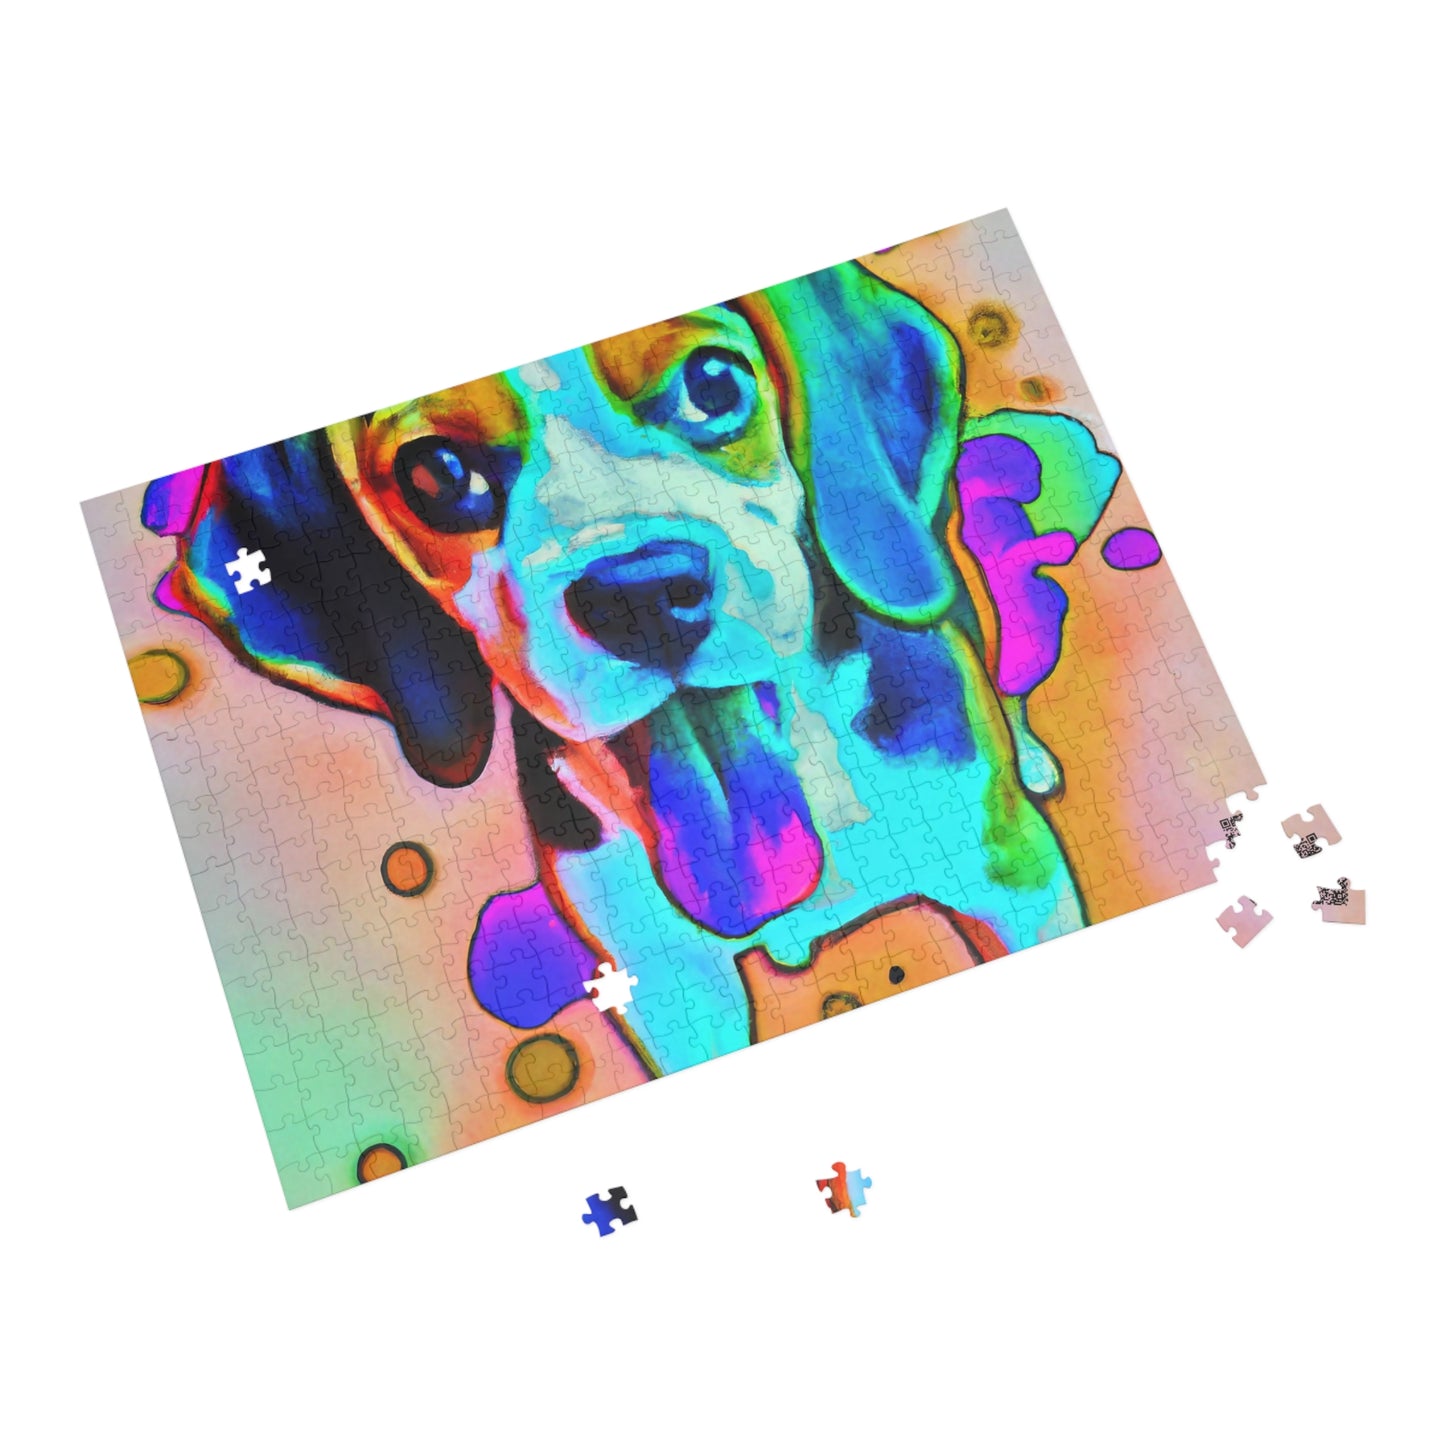 Duke Adelaide of the Flemish - Beagle Puppy - Puzzle